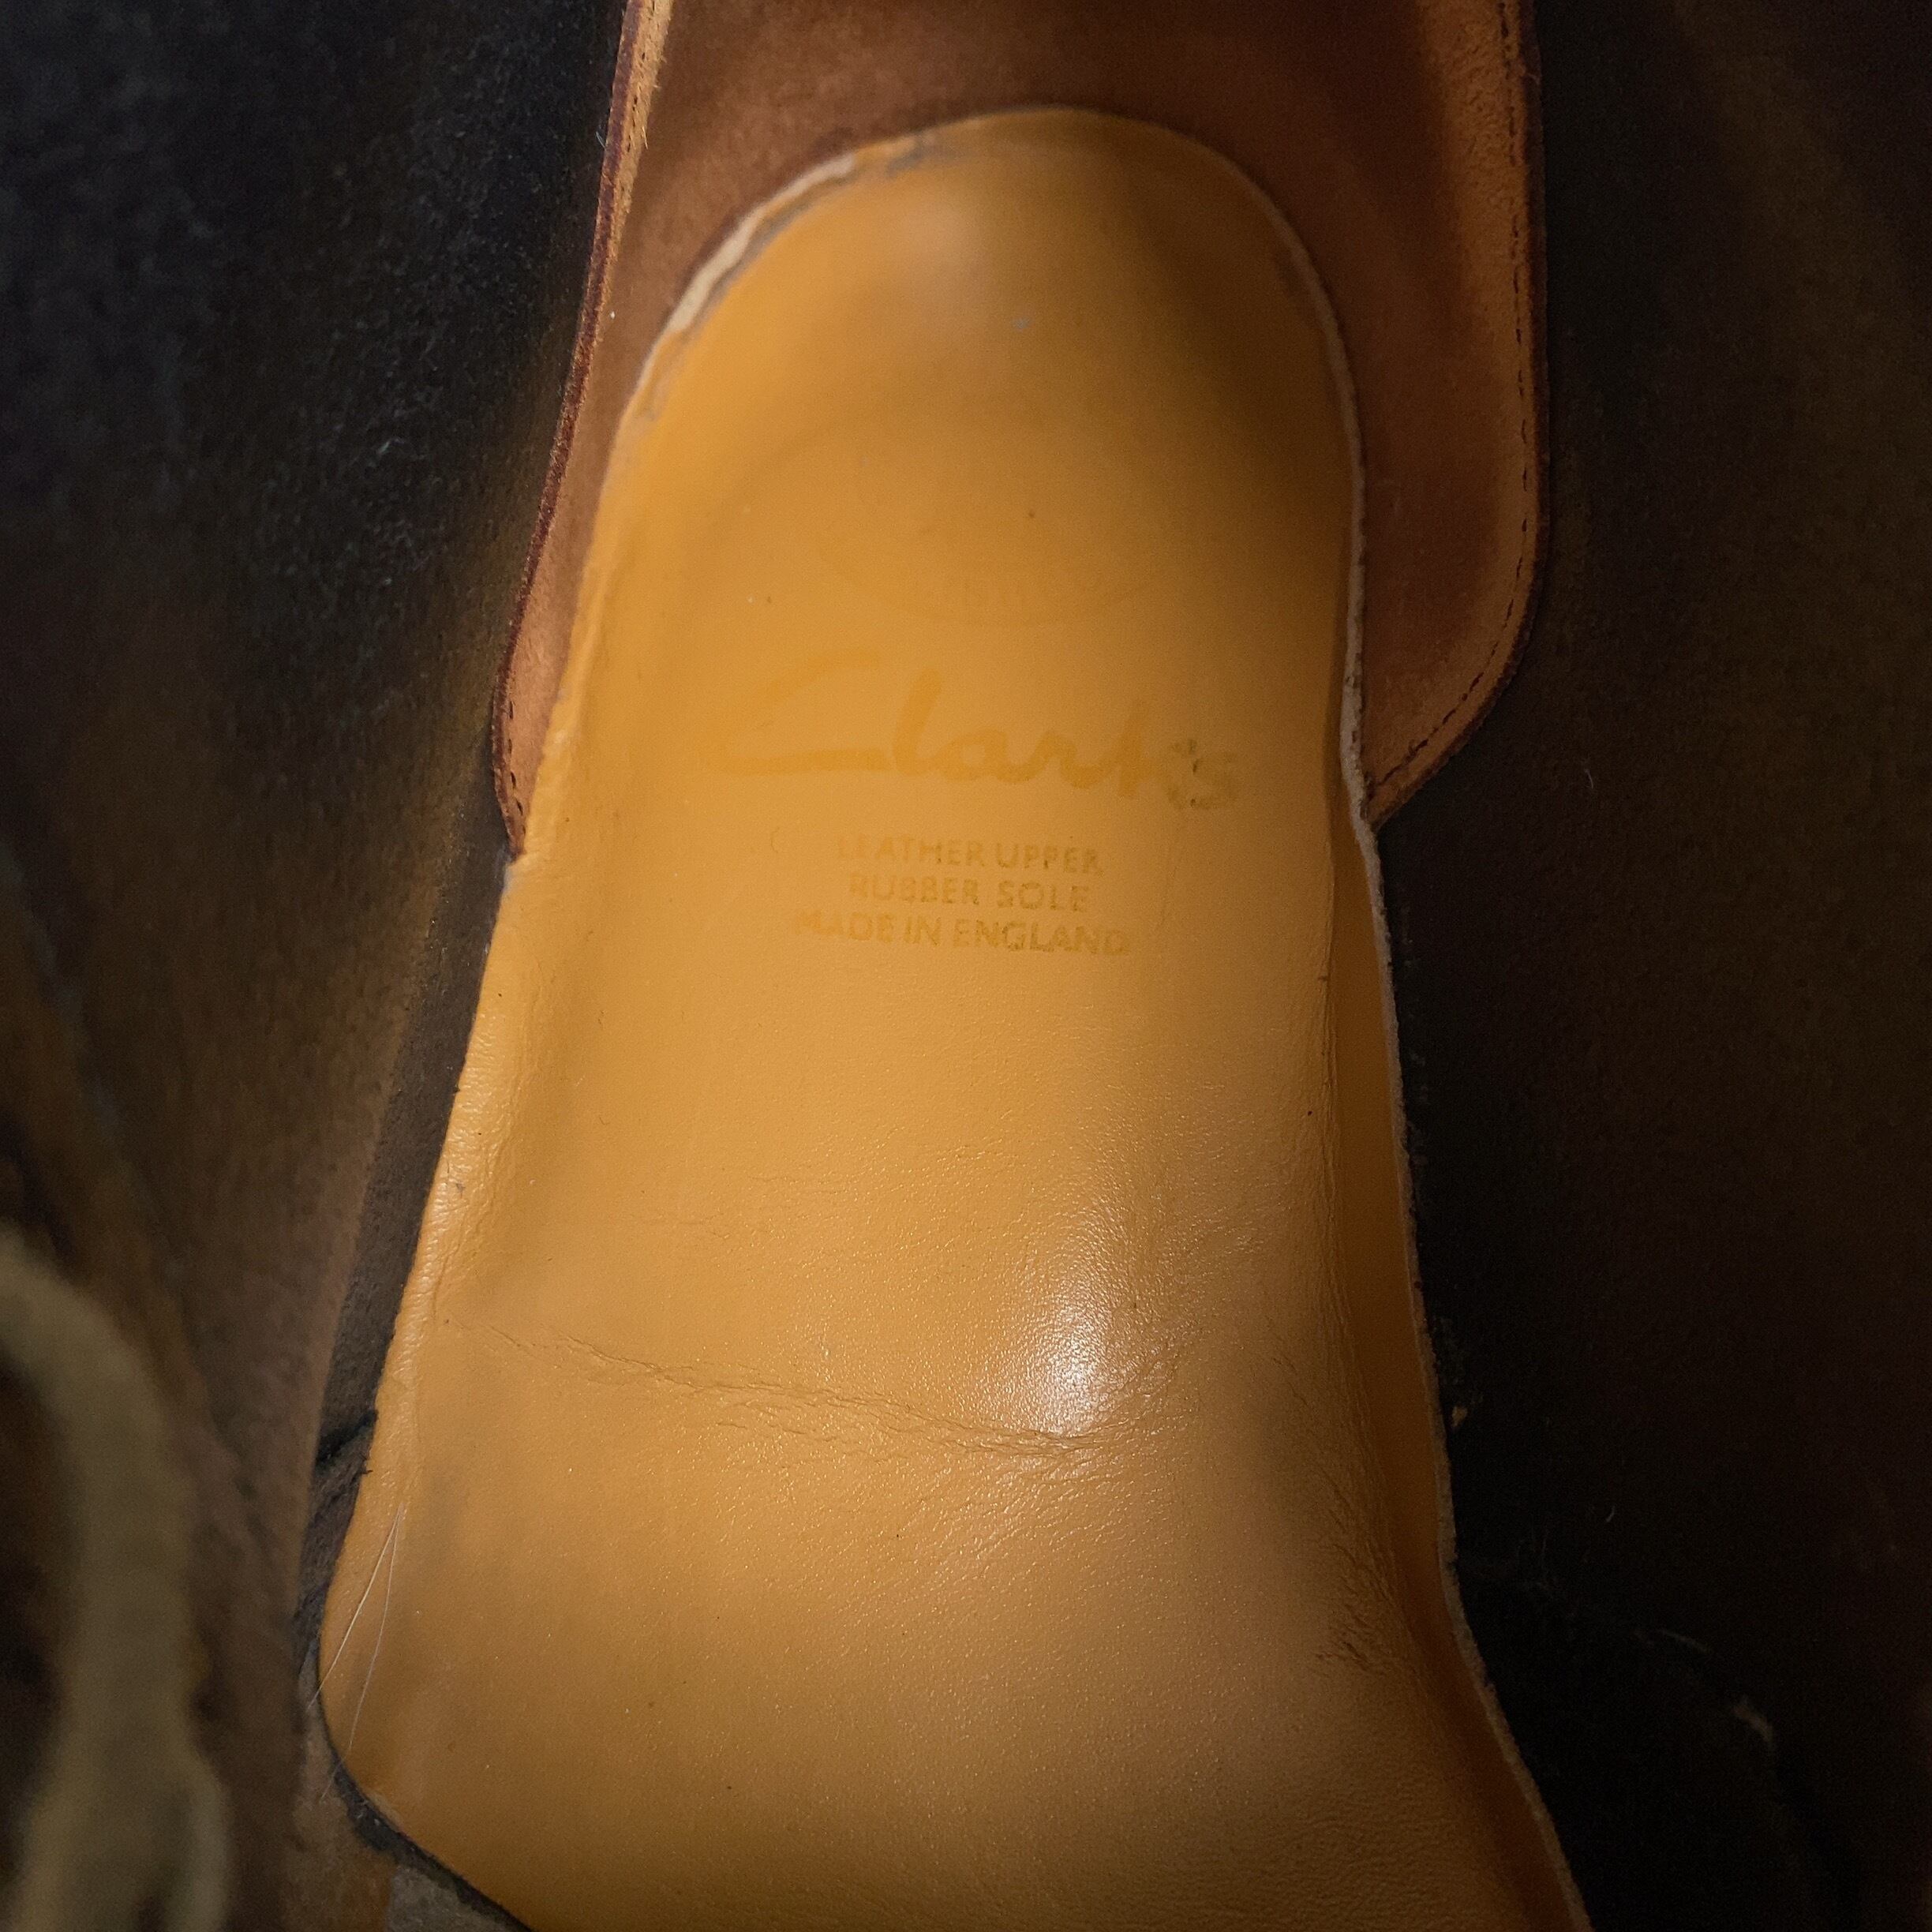 Clarks / 90's Desert Boot / Made in England / 26.5cm程度